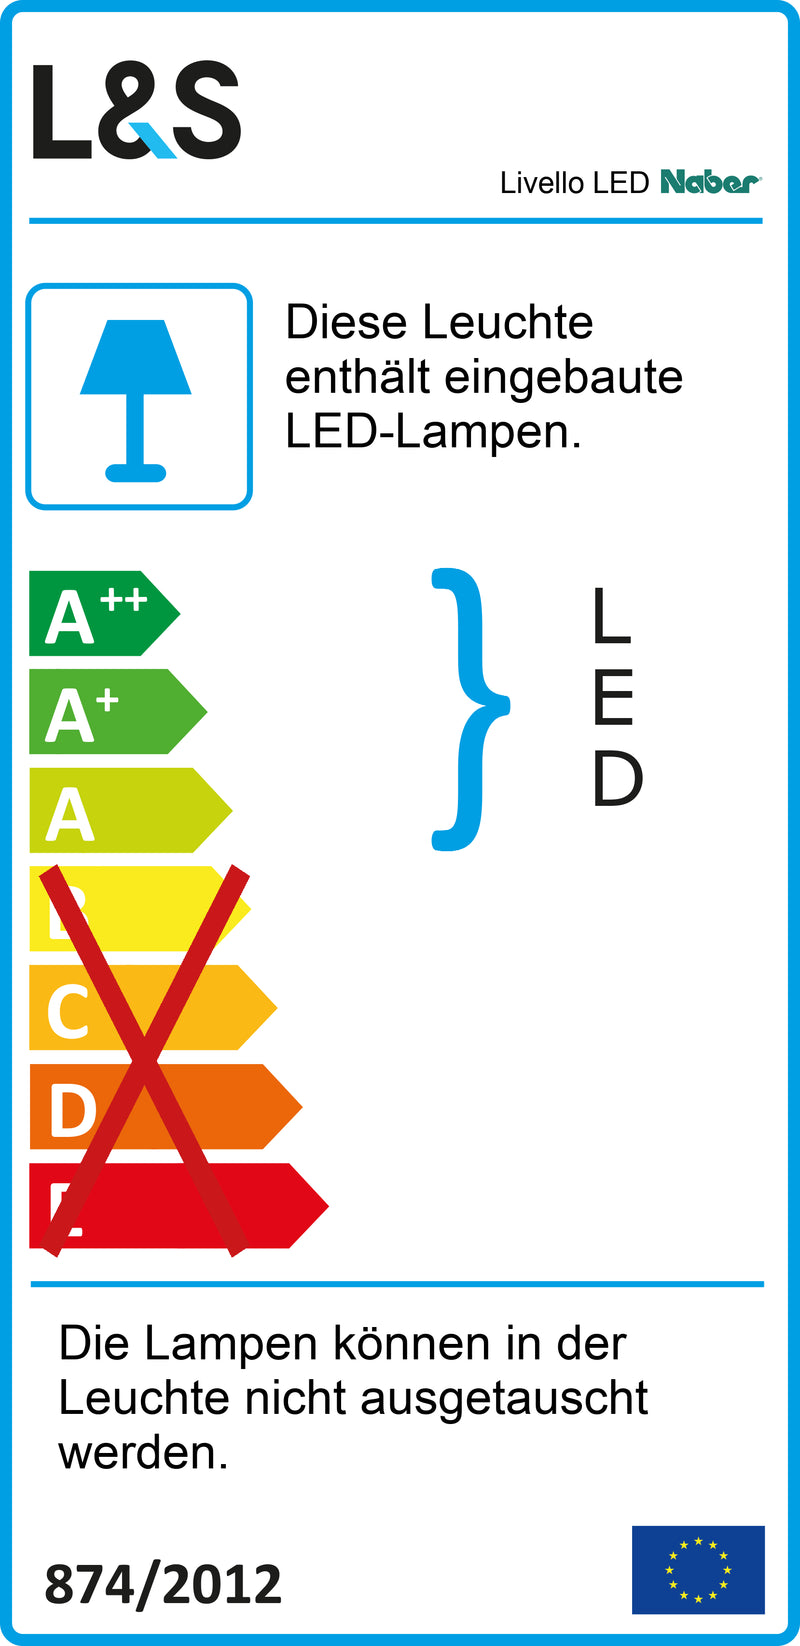 E-Label zu Zeichnung zu Livello LED als Variante Set-5, schwarz von Naber GmbH in der Kategorie Lichttechnik in Österreich auf conceptshop.at